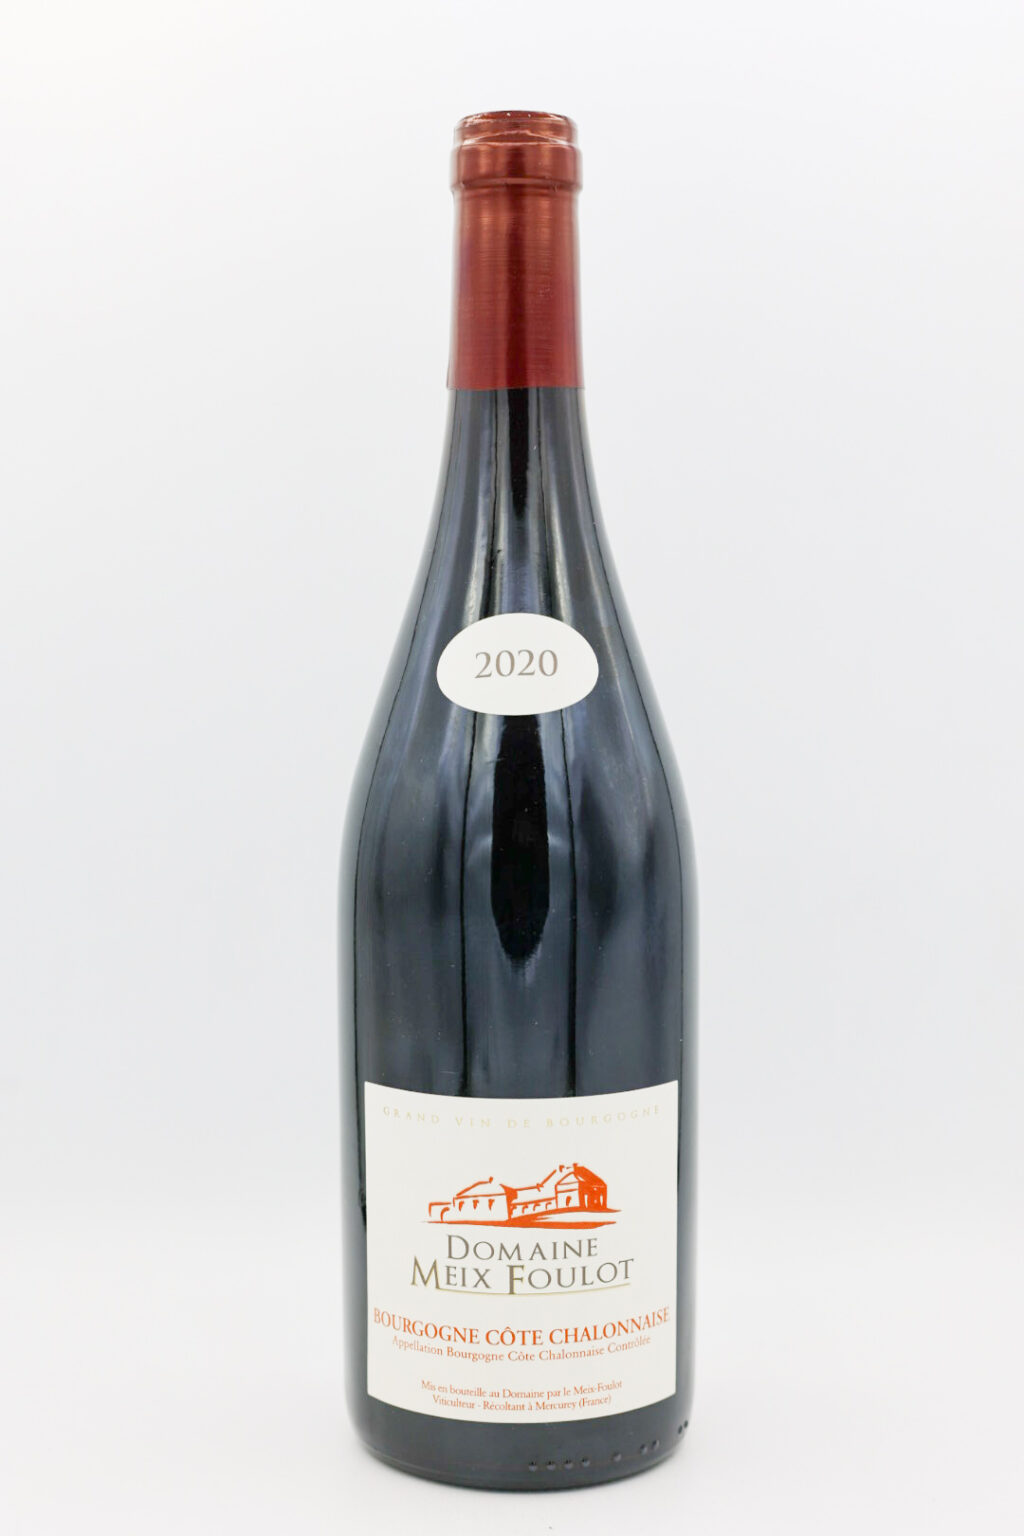 Domaine Meix Foulot Bourgogne Cote Chalonanaise Rouge 2020